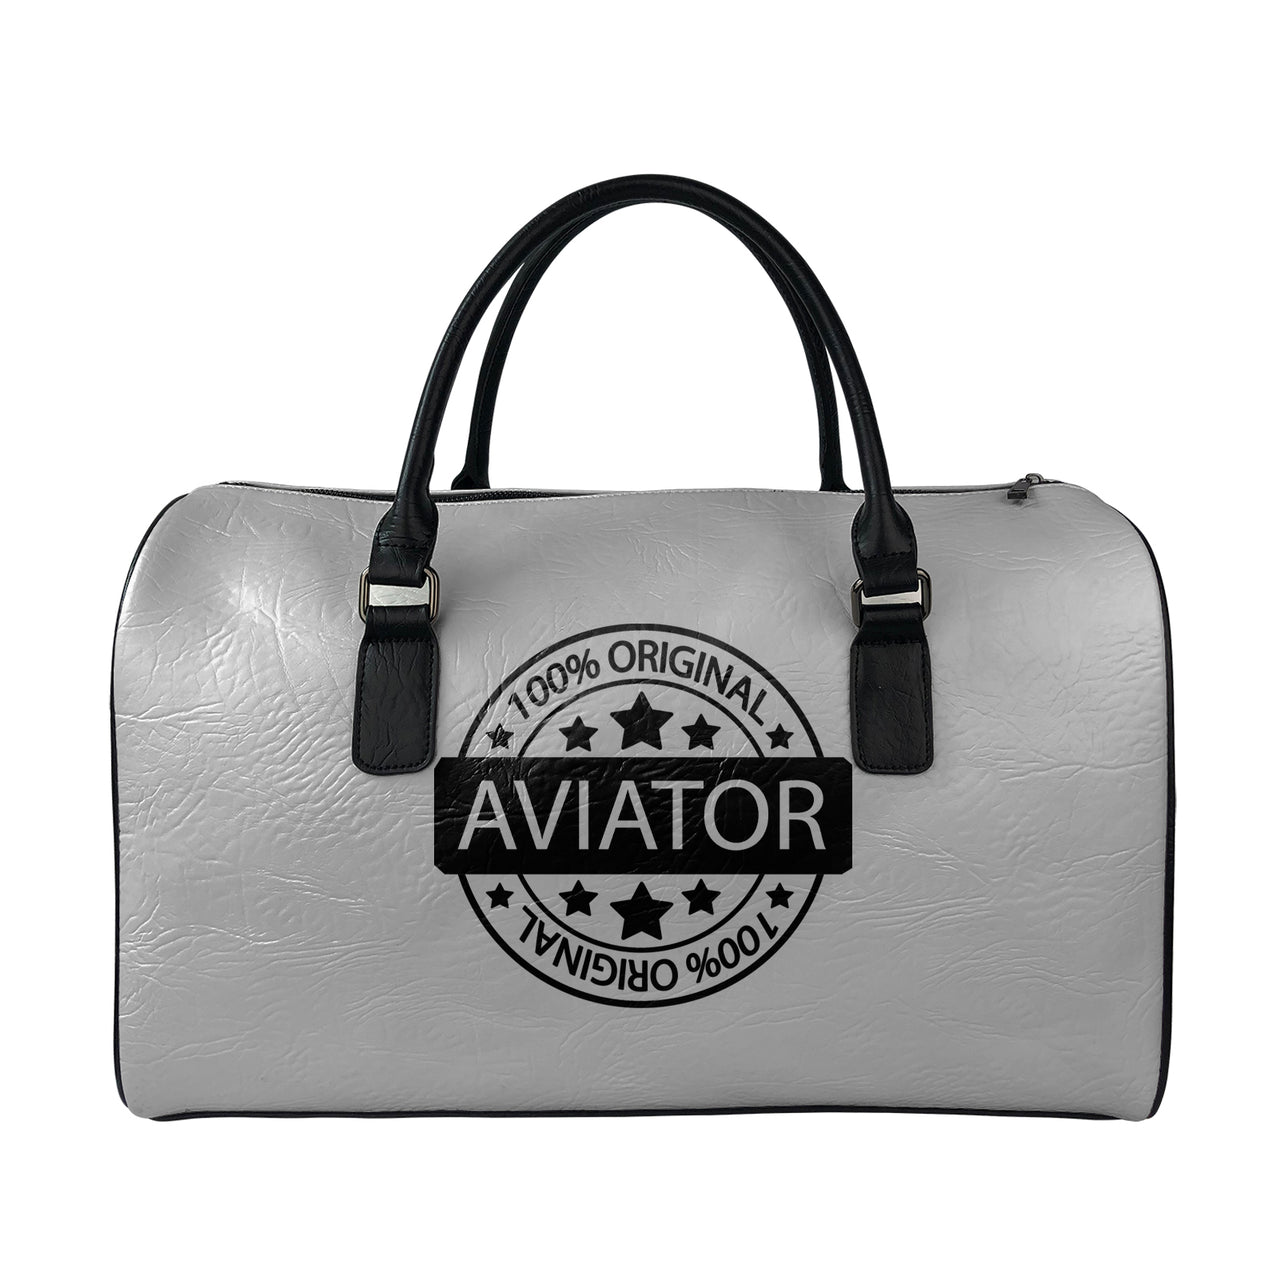 %100 Original Aviator Designed Leather Travel Bag